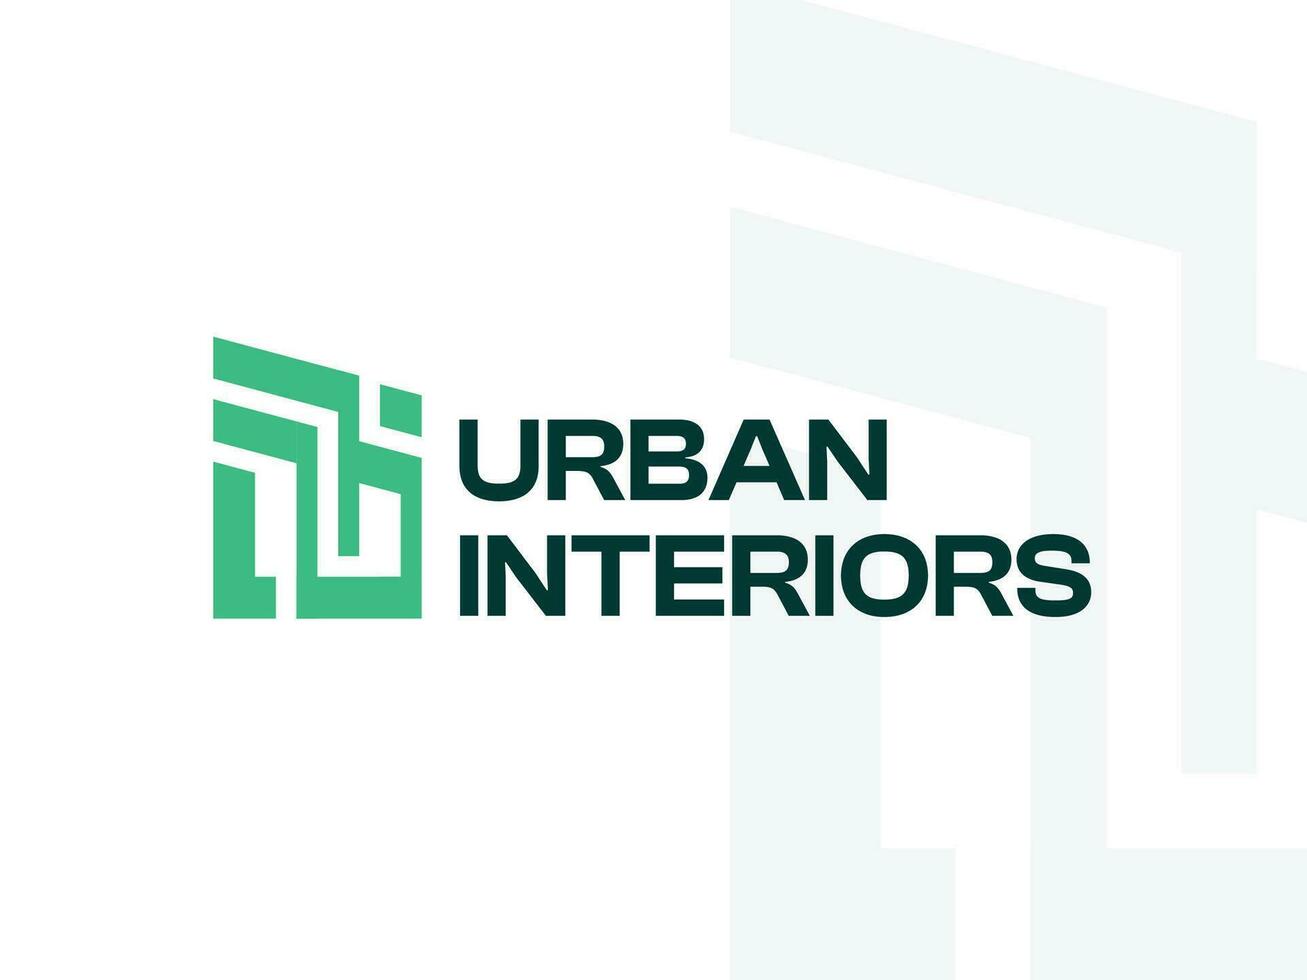 urbano construir logo modelo para real inmuebles y edificio vector